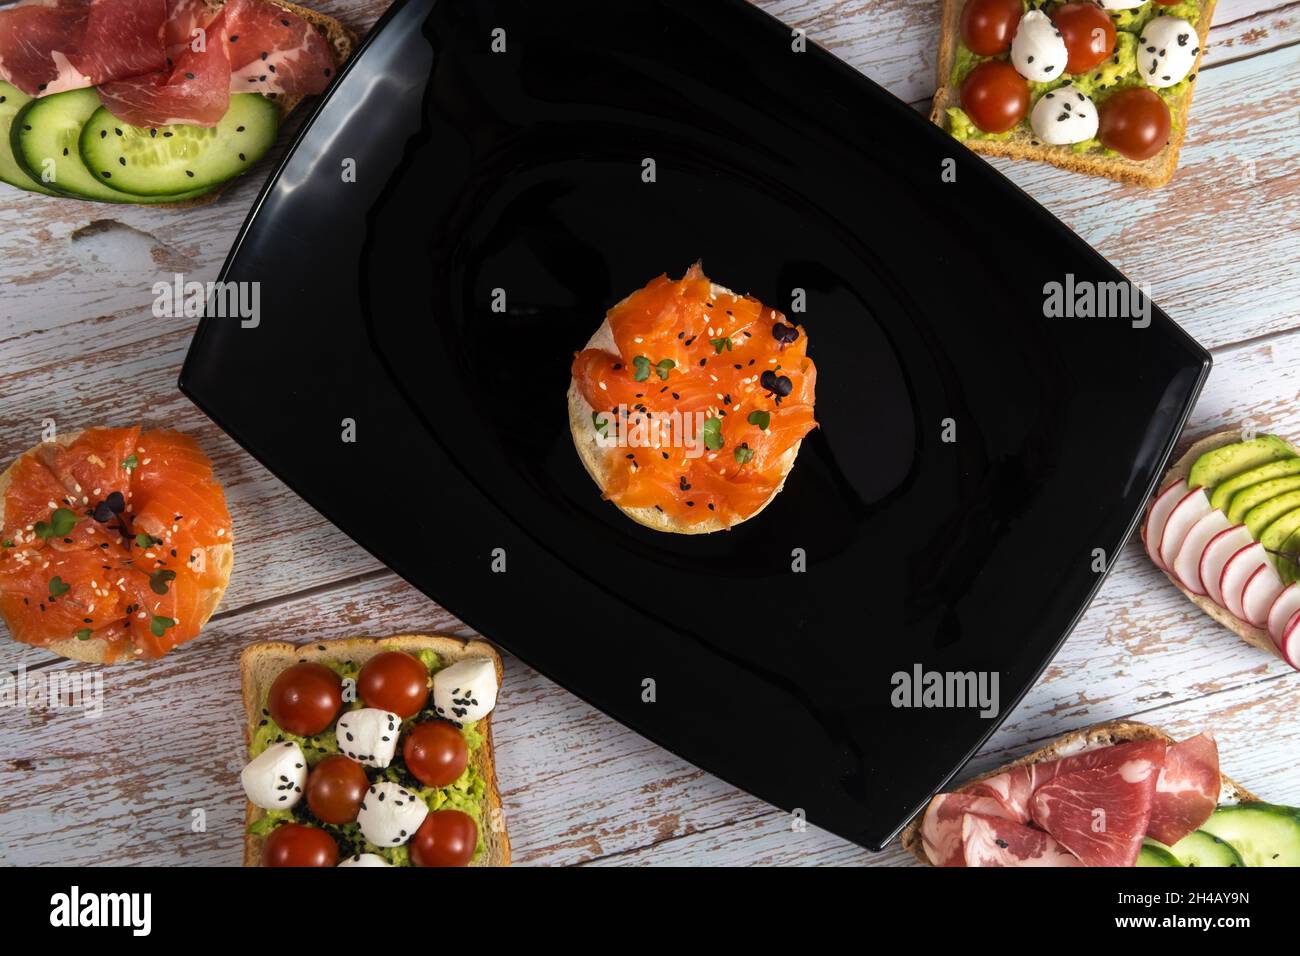 Ein Sandwich mit rotem Fisch befindet sich auf einem schwarzen Teller und es gibt viele andere Sandwiches. Stockfoto